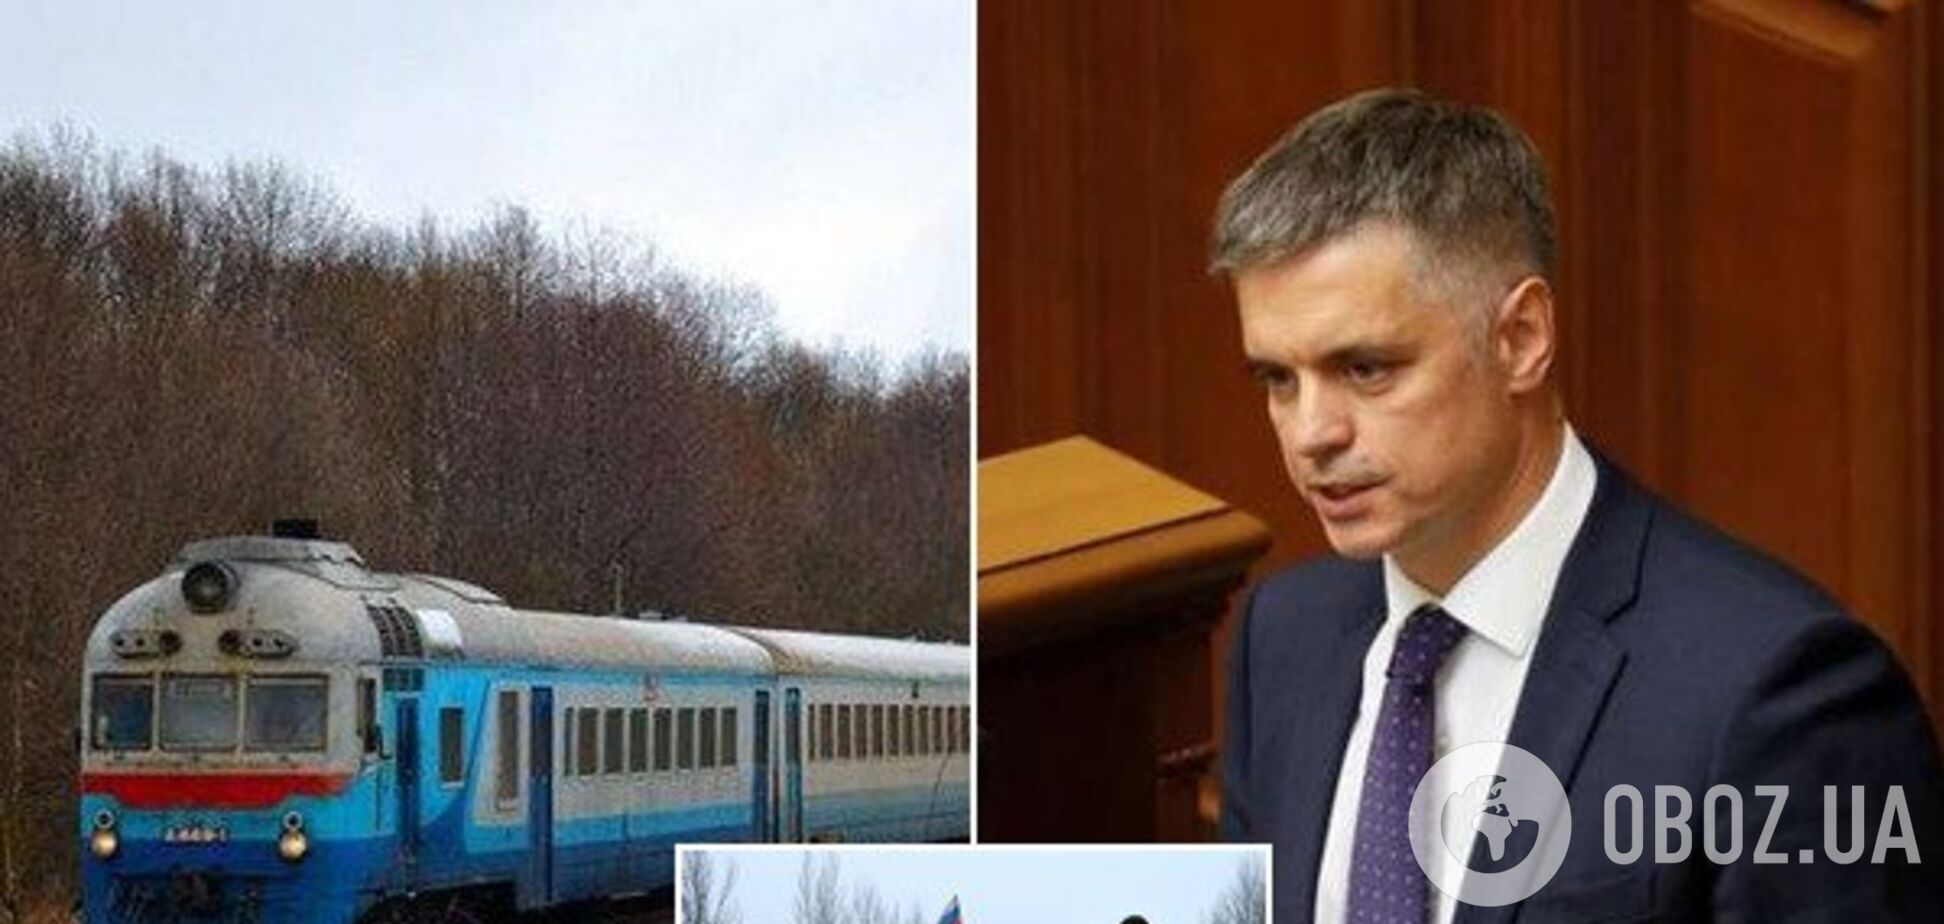 'Для комфорта': у Зеленского захотели запустить поезда в 'ДНР' и 'ЛНР'